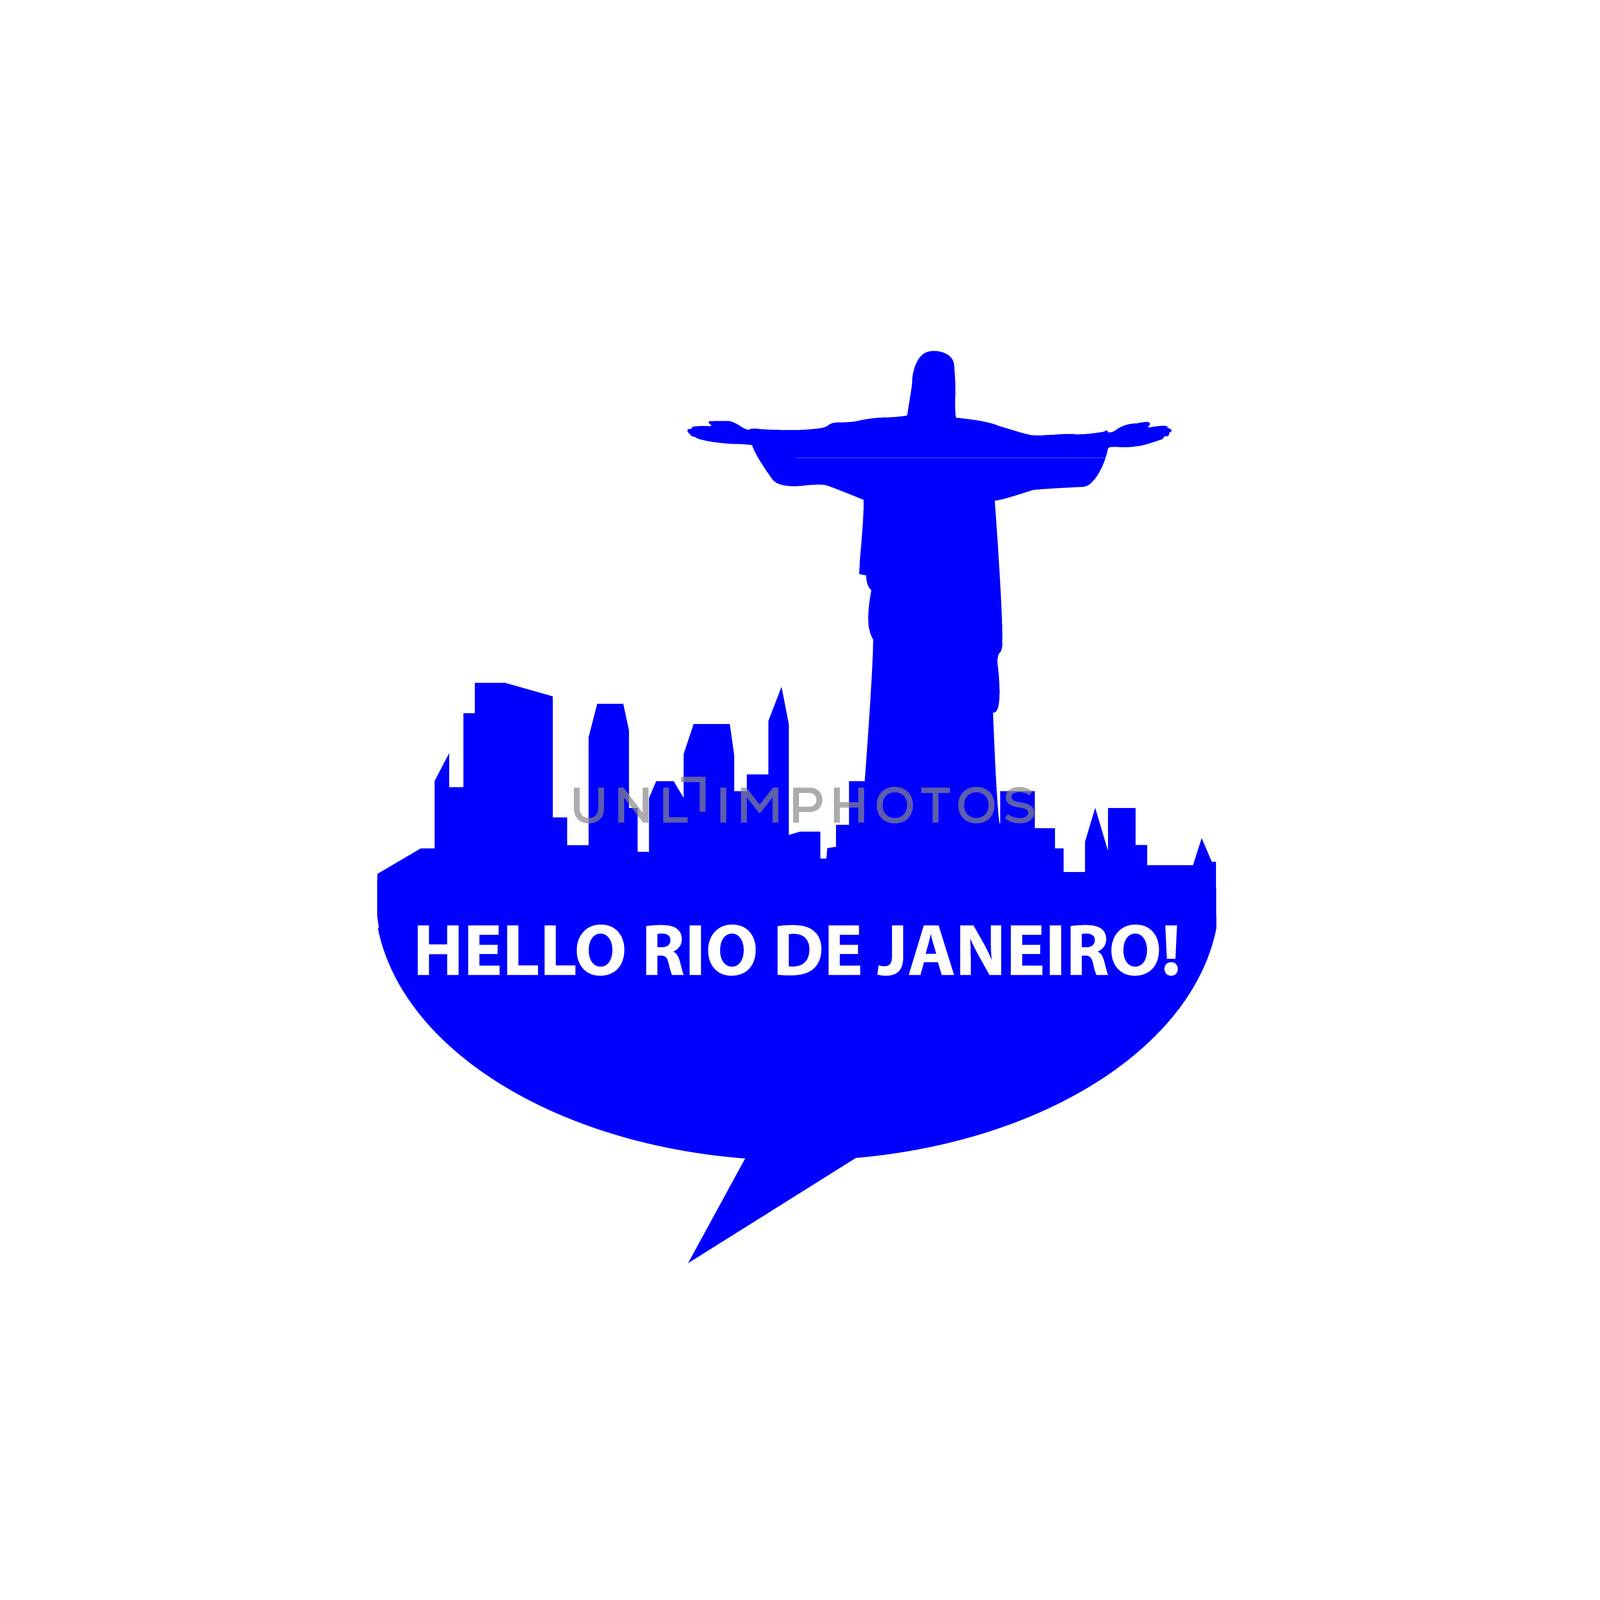 Speech-bubble - Hello Rio de Janeiro!